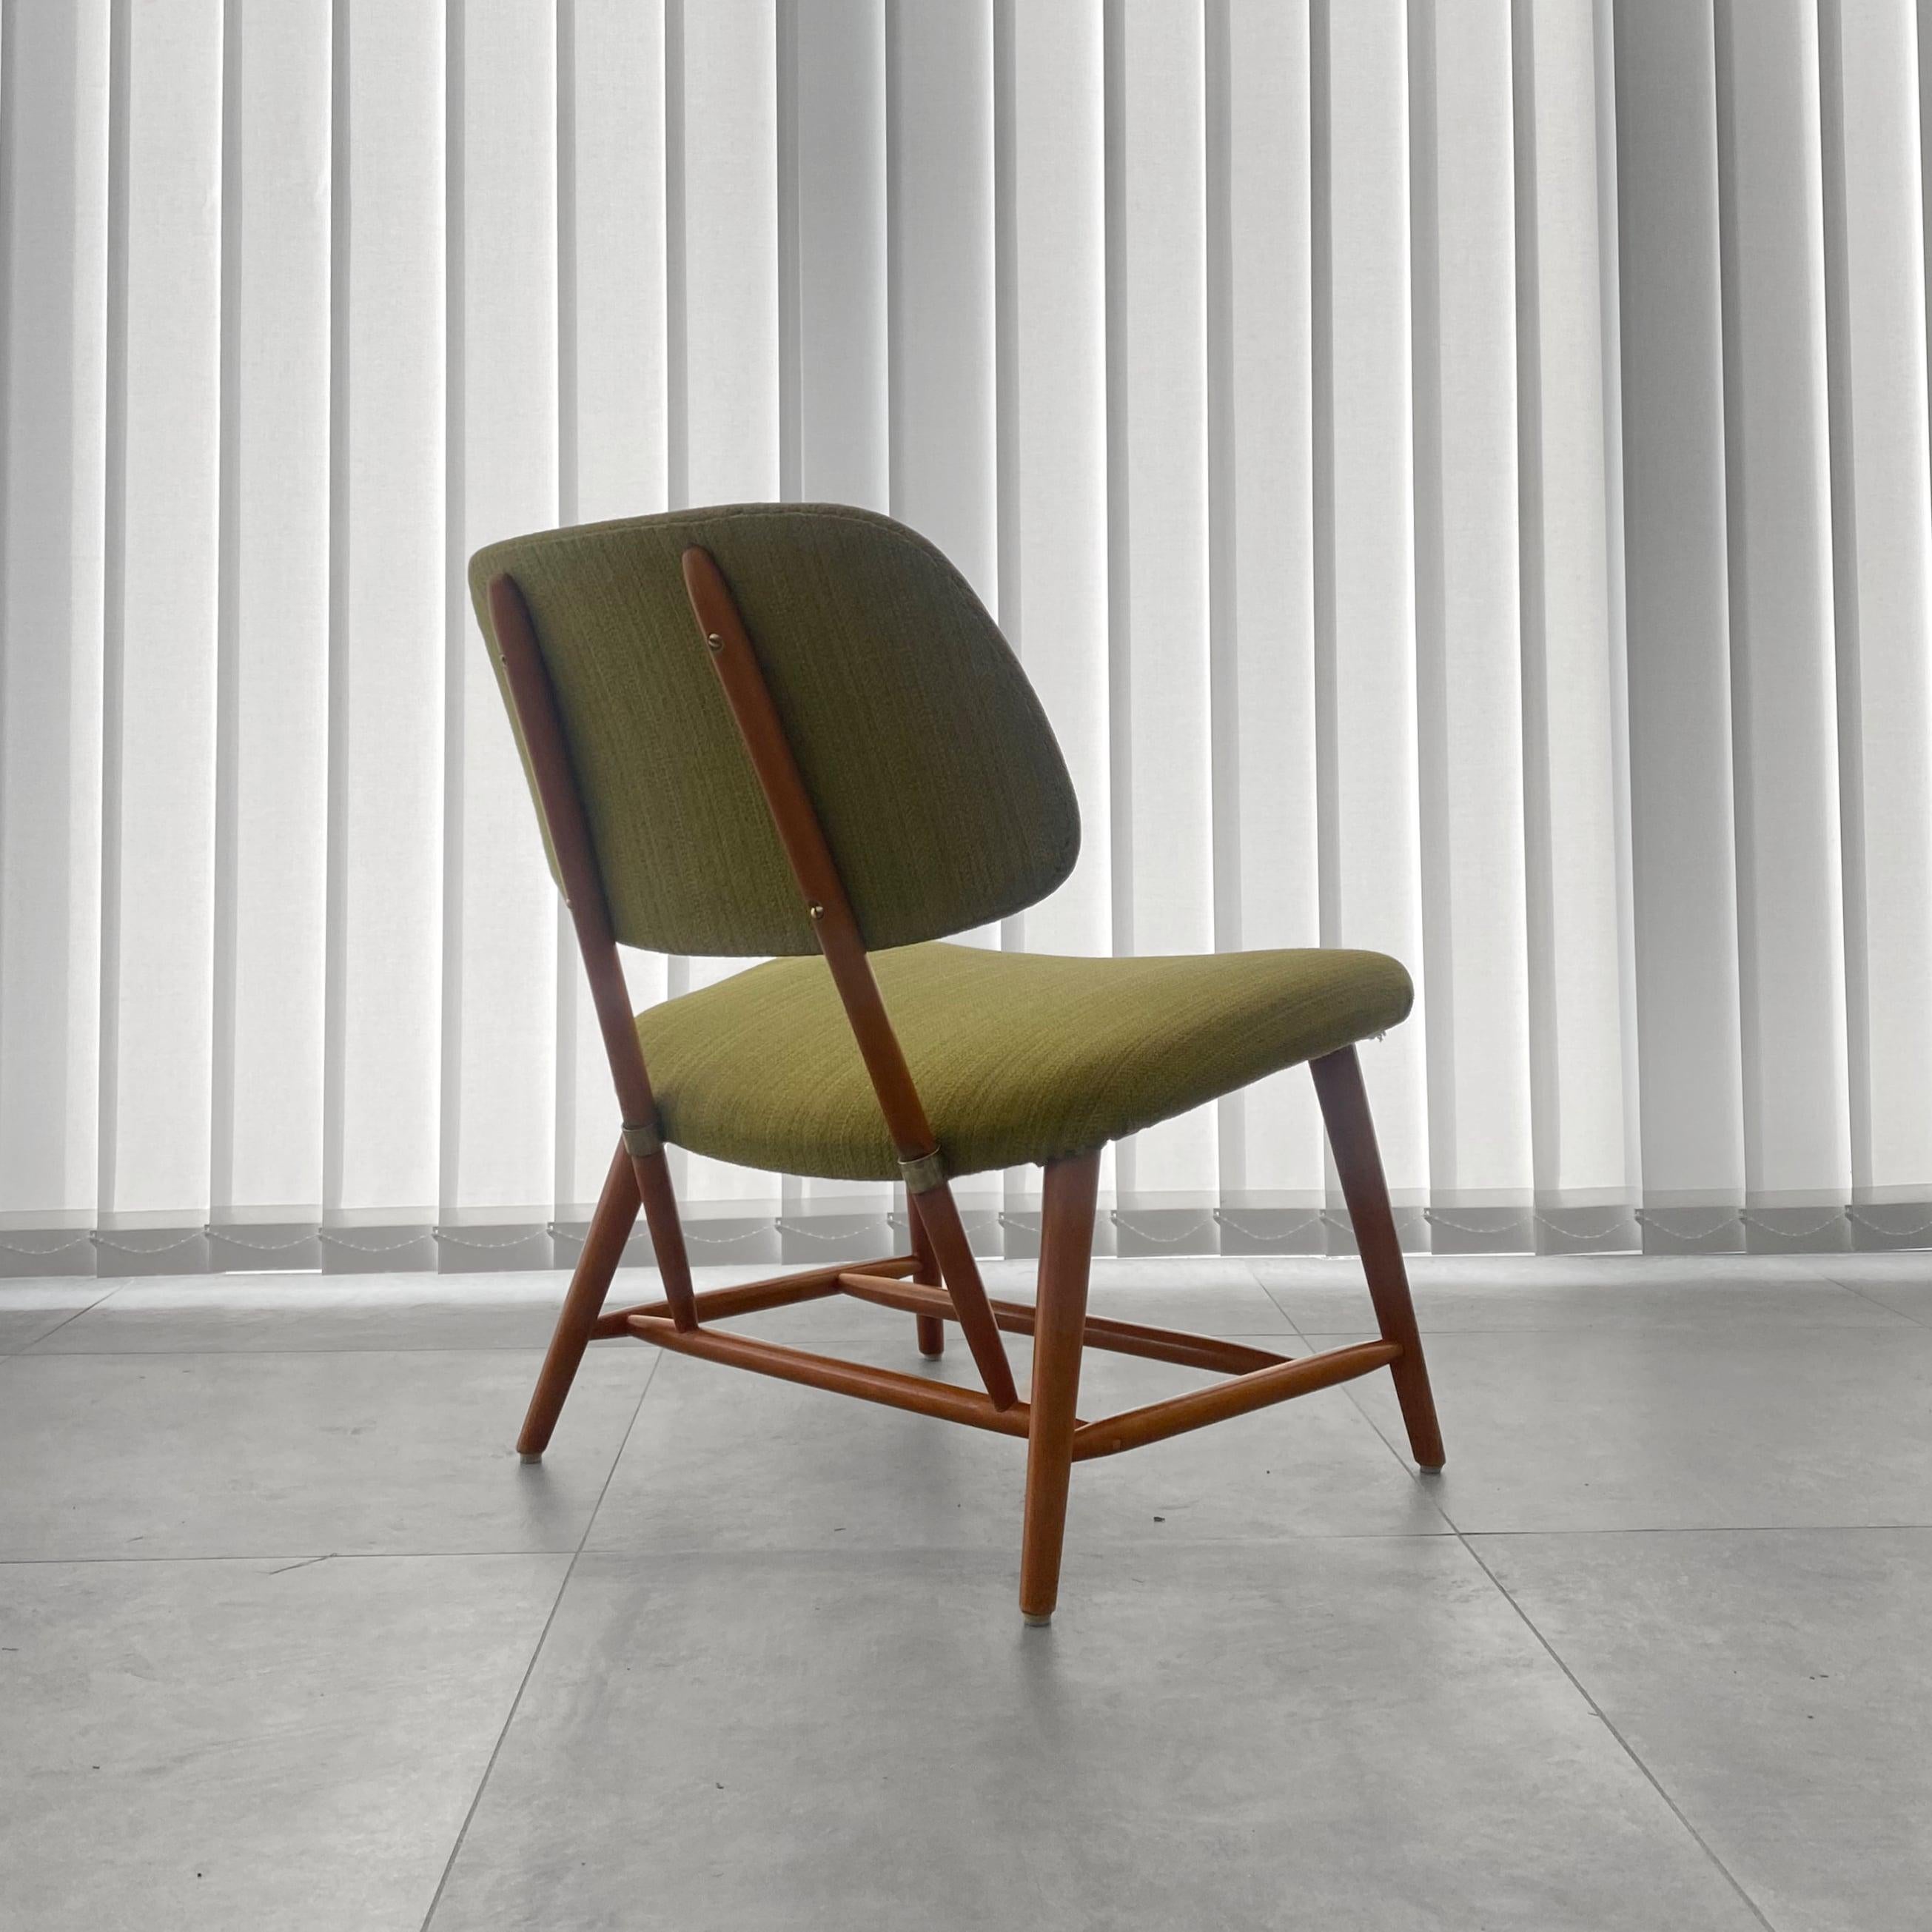 Chaise longue TeVe, conçue par l'architecte suédois Alf Svensson en 1953 pour le fabricant Ljungs Industrier (Dux). Fabriqué en hêtre massif avec des détails en laiton et doté d'un revêtement textile original dans une douce nuance de vert. Cette